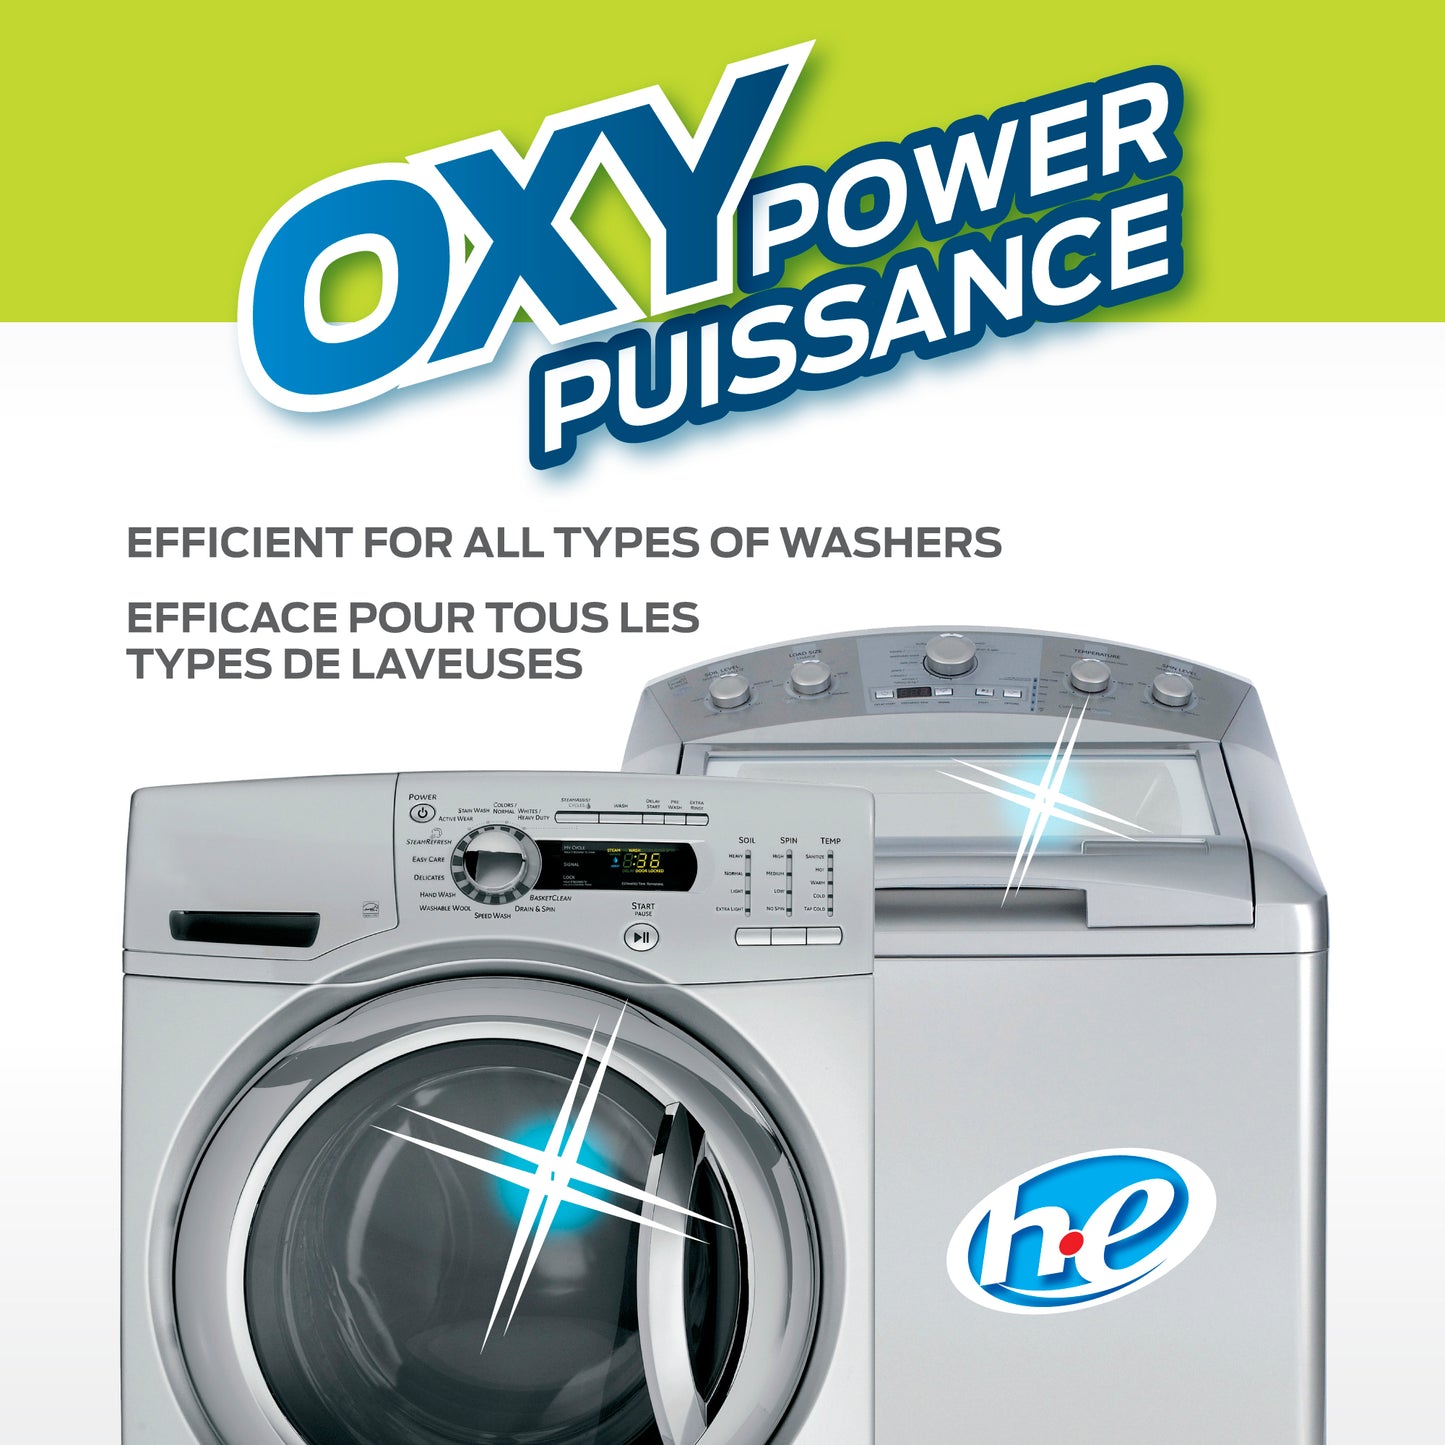 Nettoyant pour laveuse Oxy puissance - 700 ml